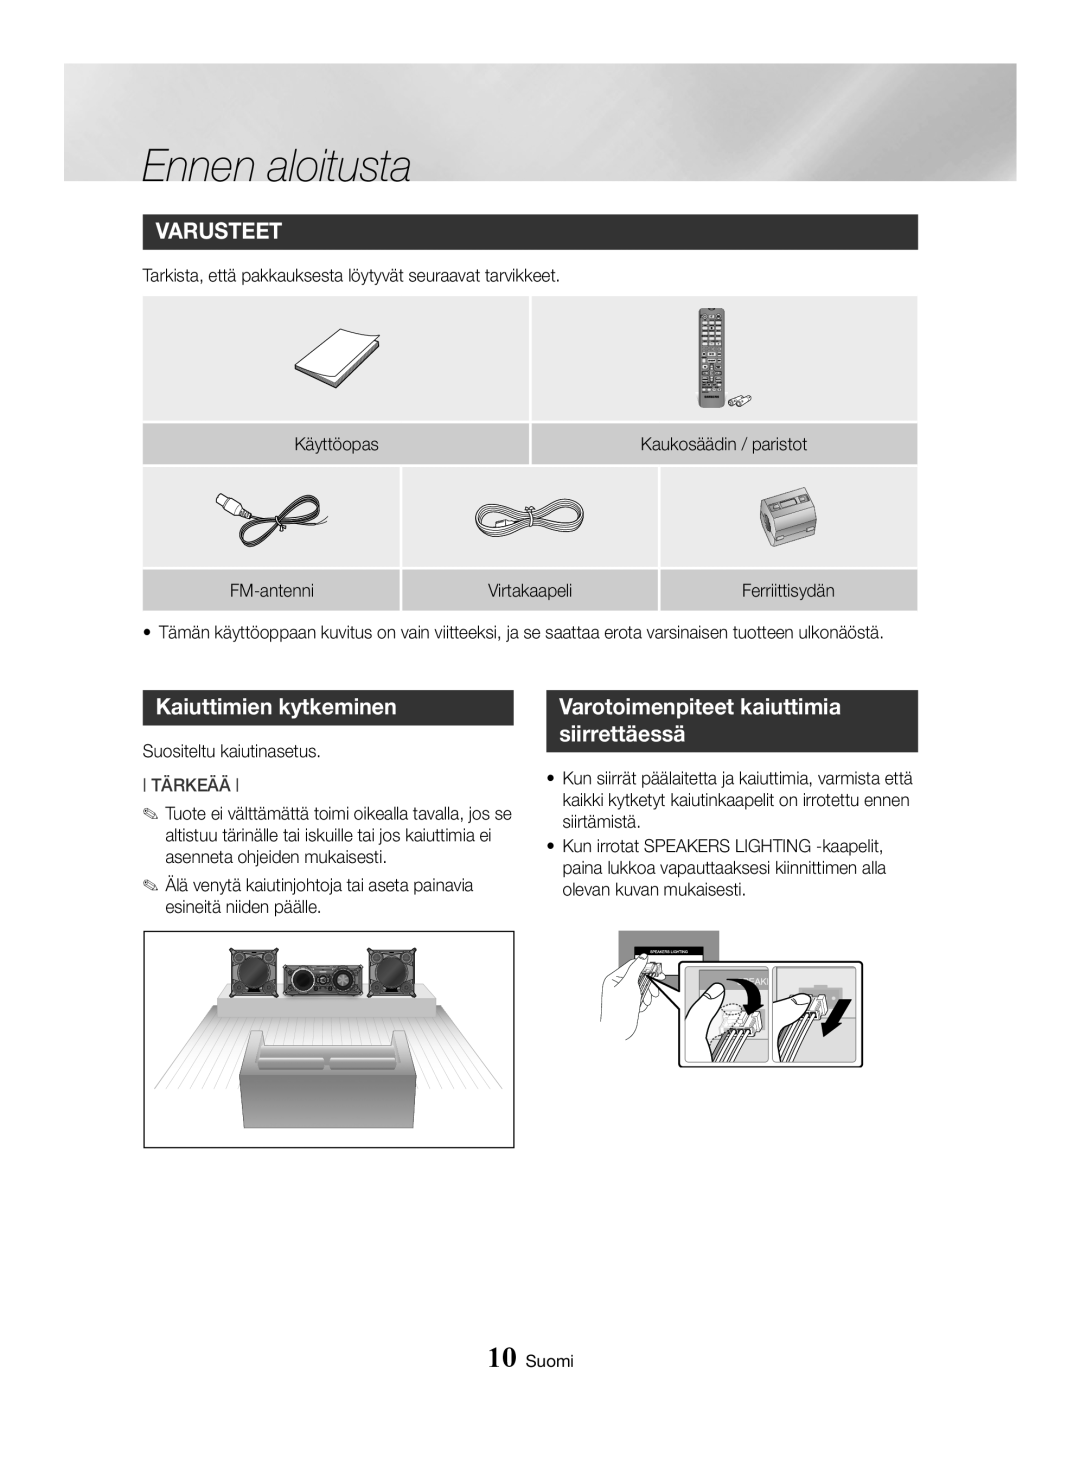 Samsung MX-HS8000/EN manual Varusteet, Kaiuttimien kytkeminen, Varotoimenpiteet kaiuttimia siirrettäessä, Ennen aloitusta 